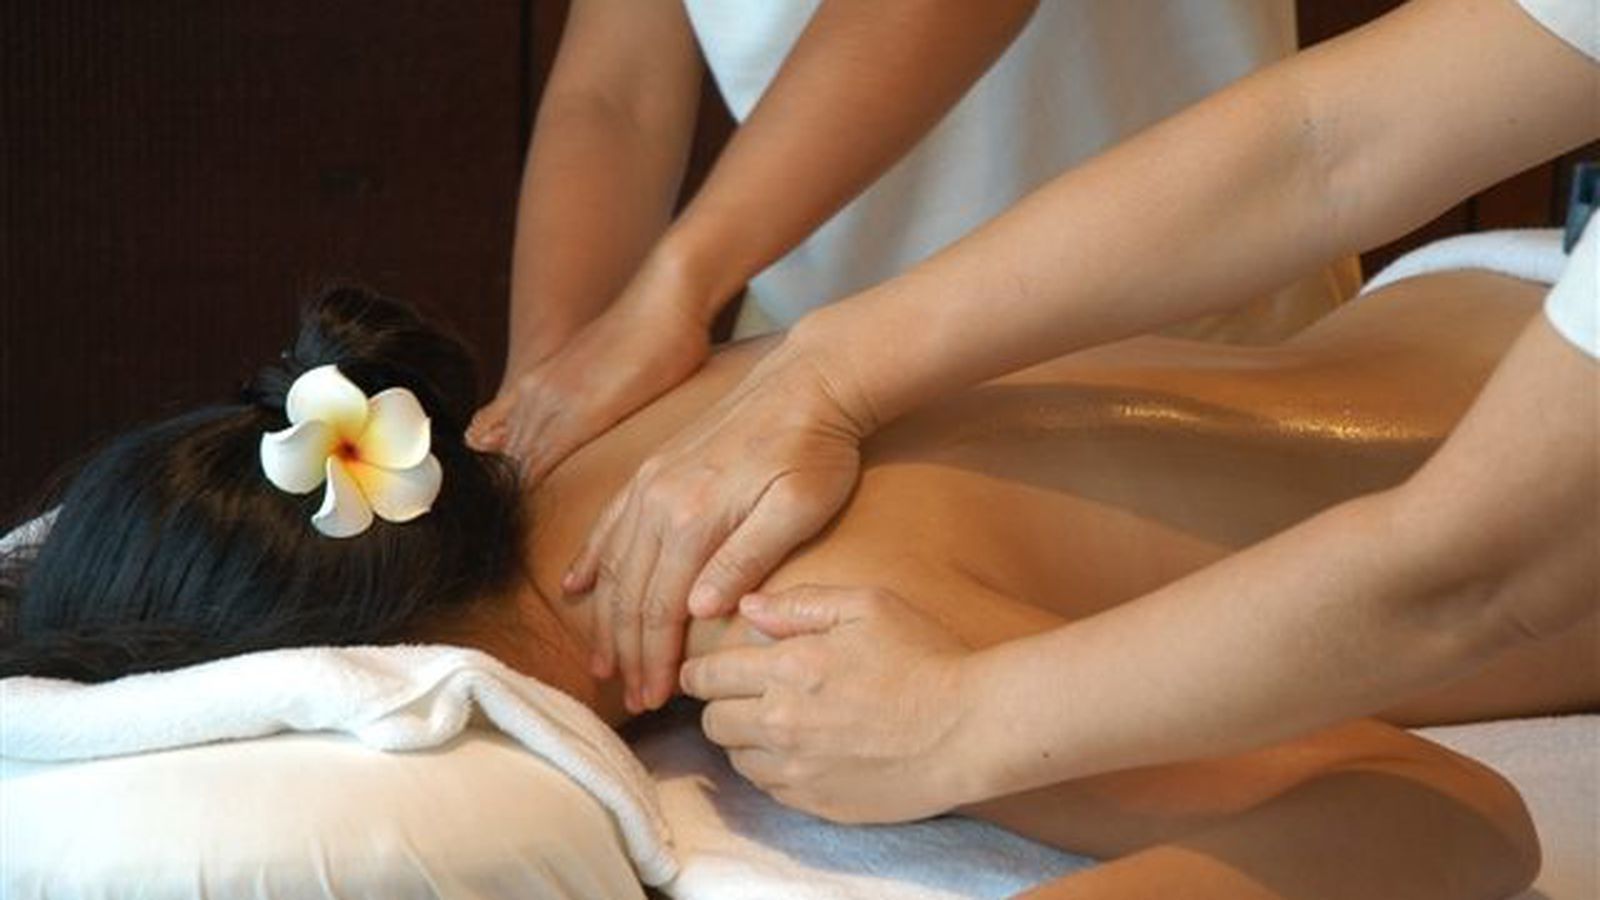 Angel massage. Королевский массаж. Ручной массаж. Тайский массаж в четыре руки. Традиционный Балийский массаж.